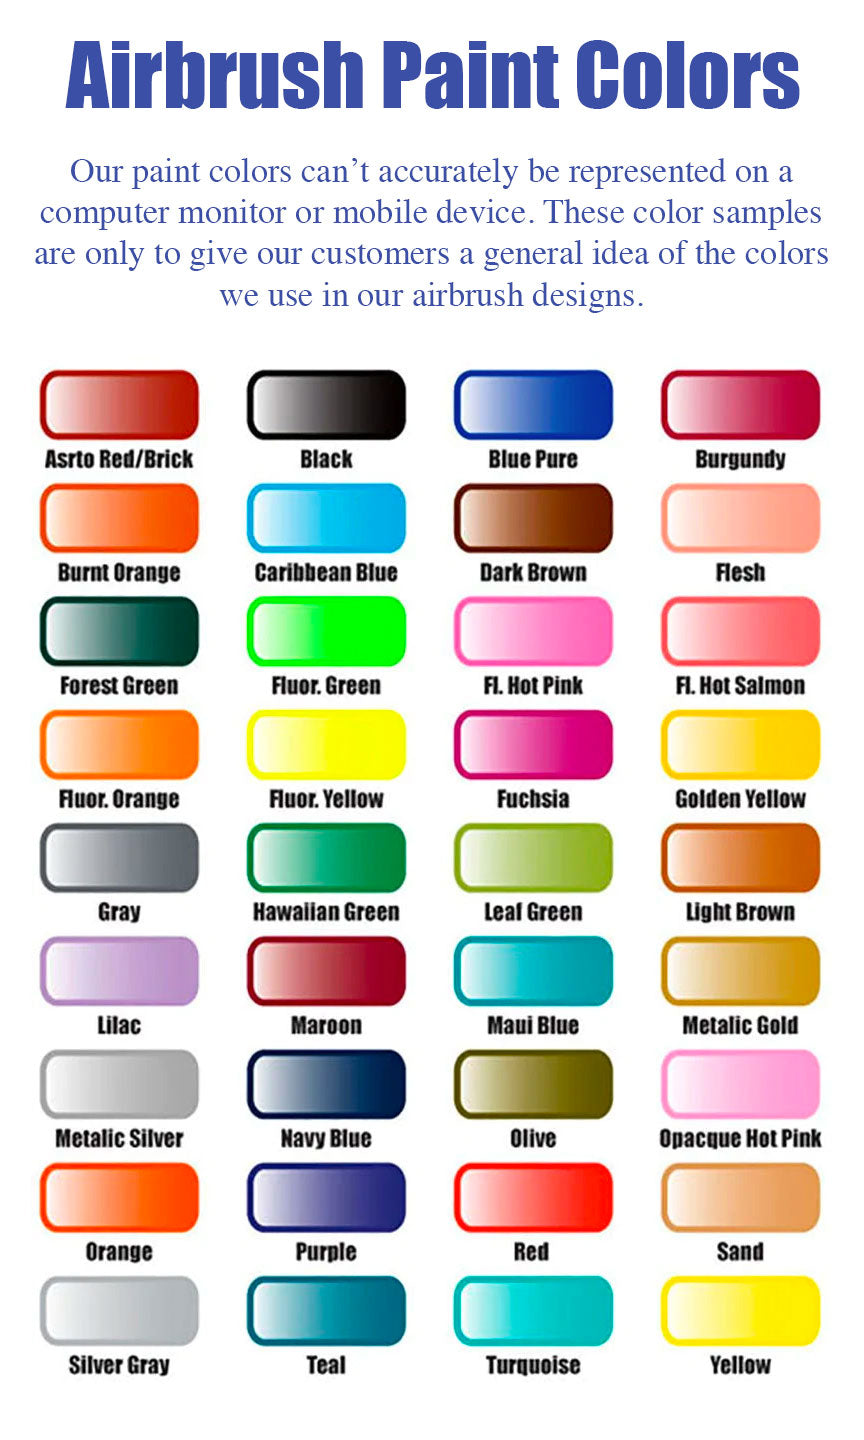 Airbrush T-shirt - Pet Portrait - Your Pet's Name - You Choose Colors